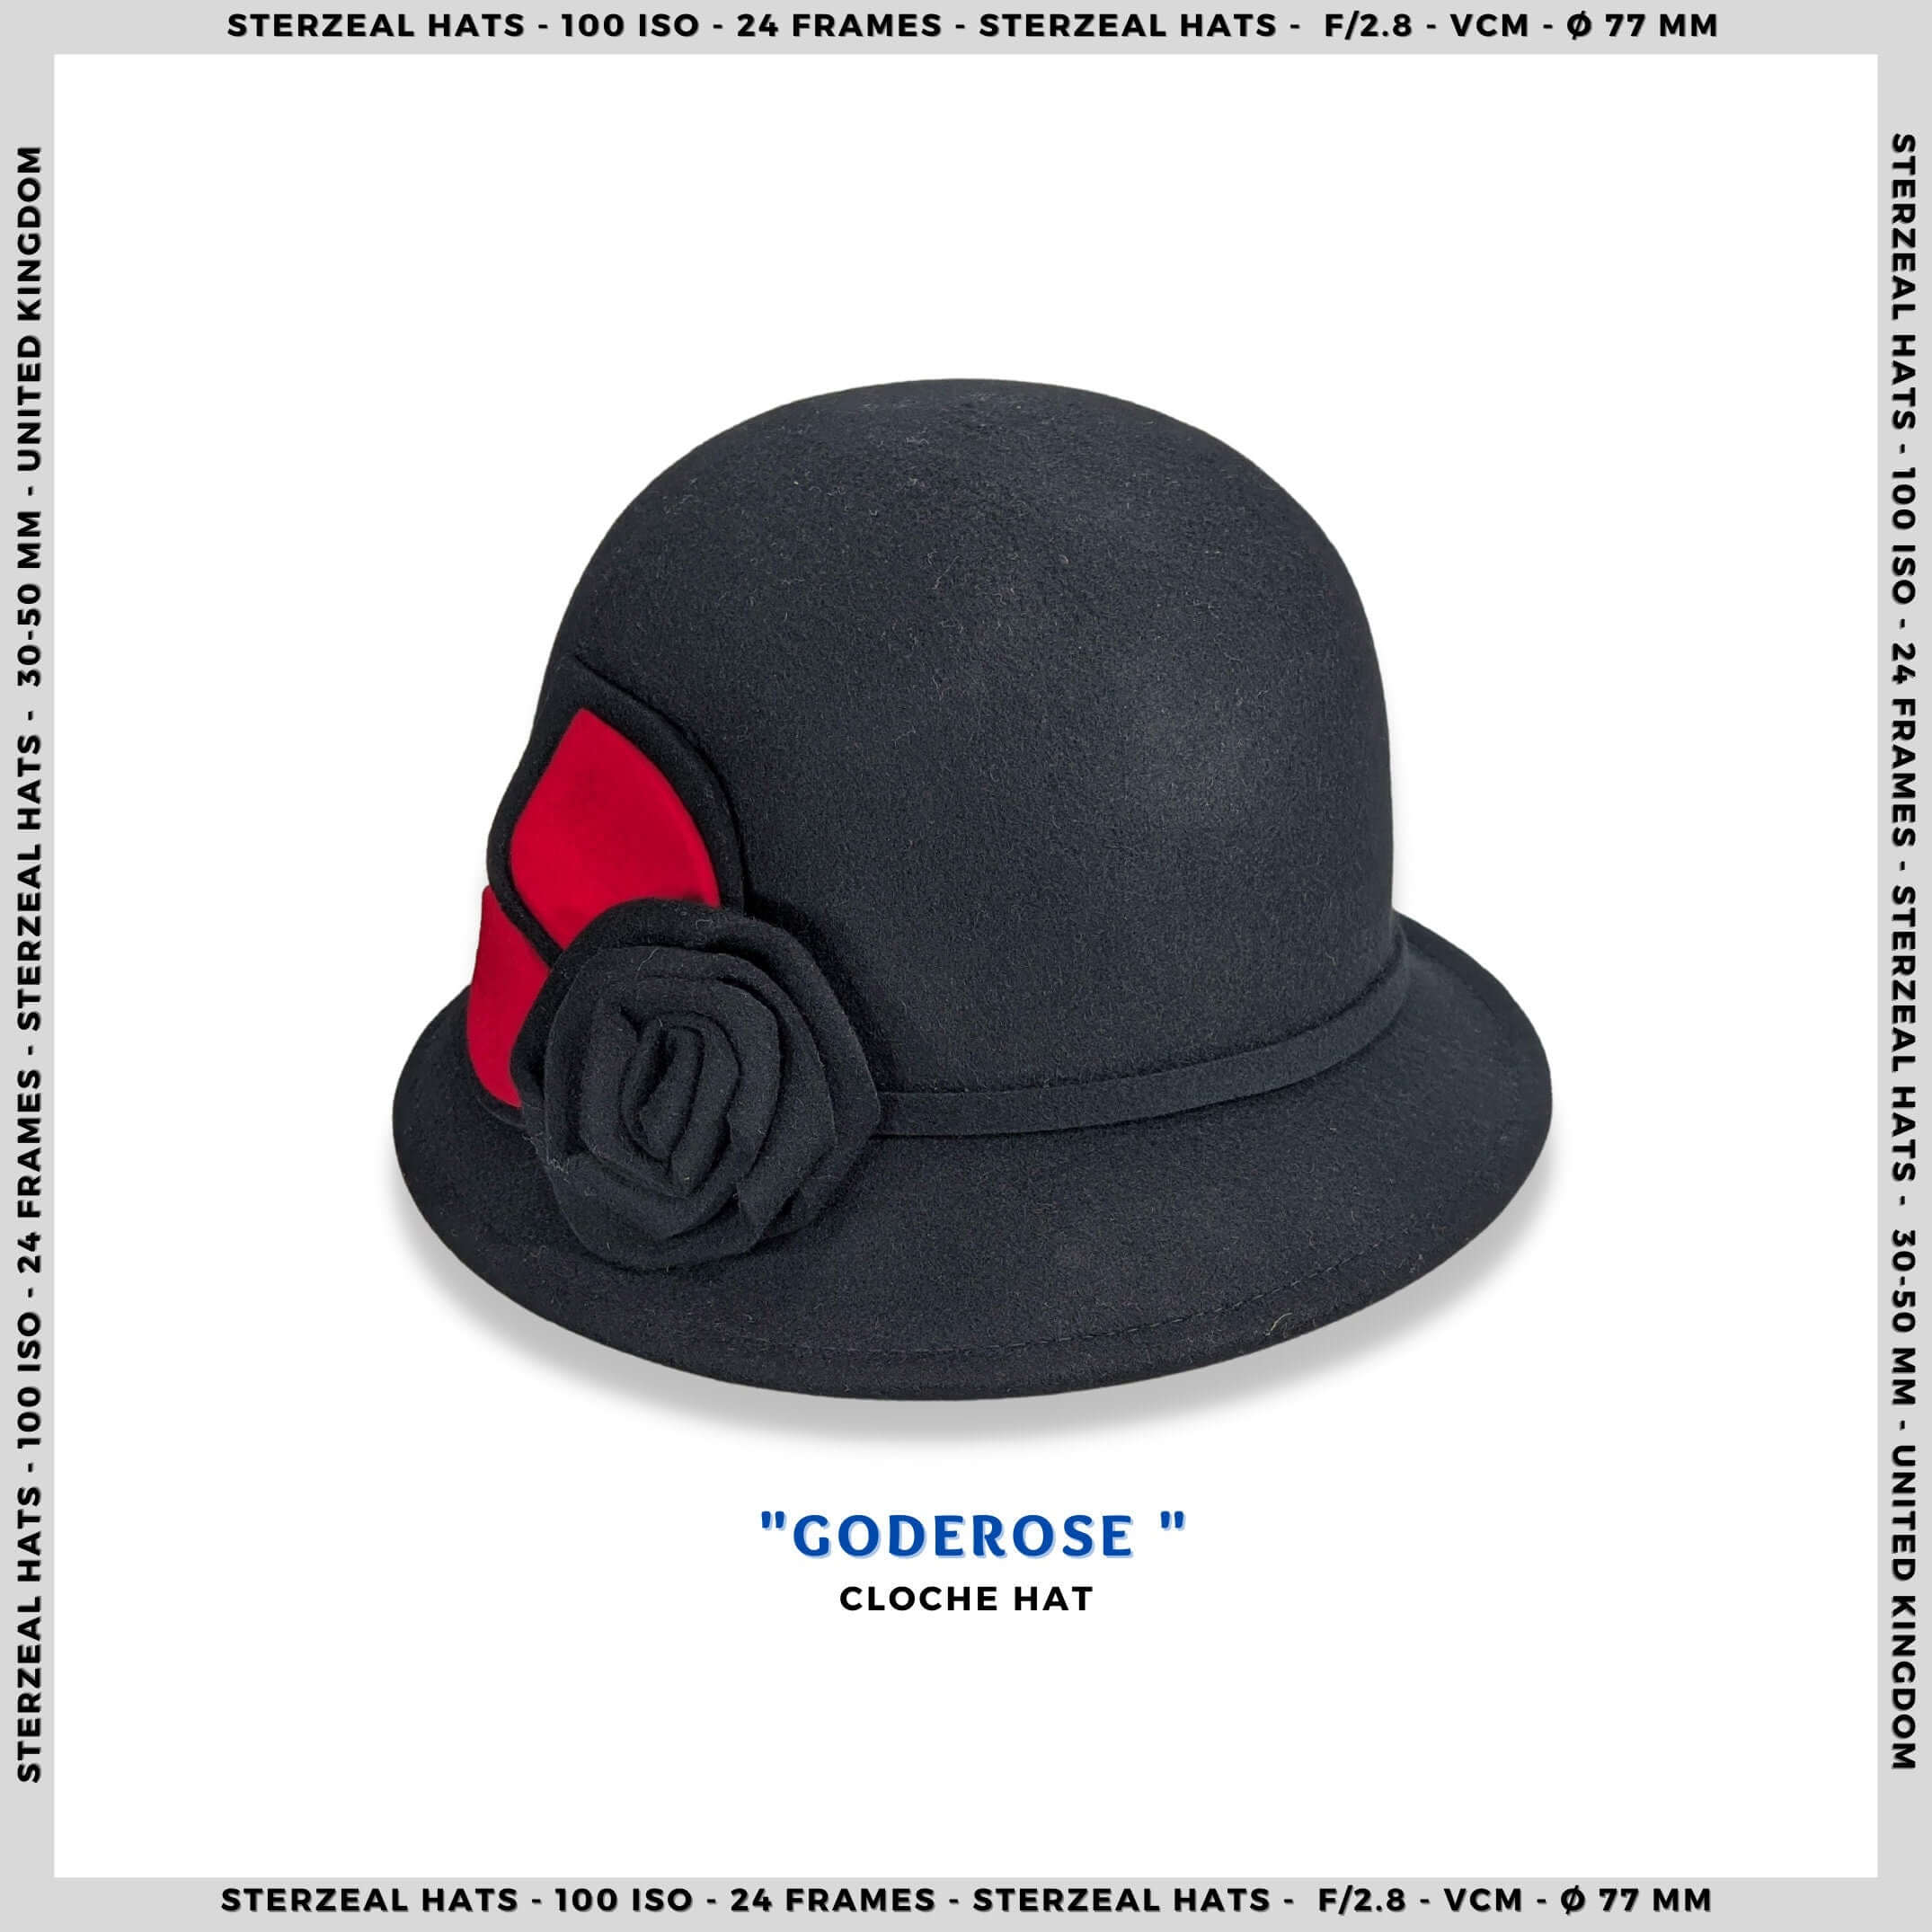 GODEROS | Cloche hat flower cloche hat